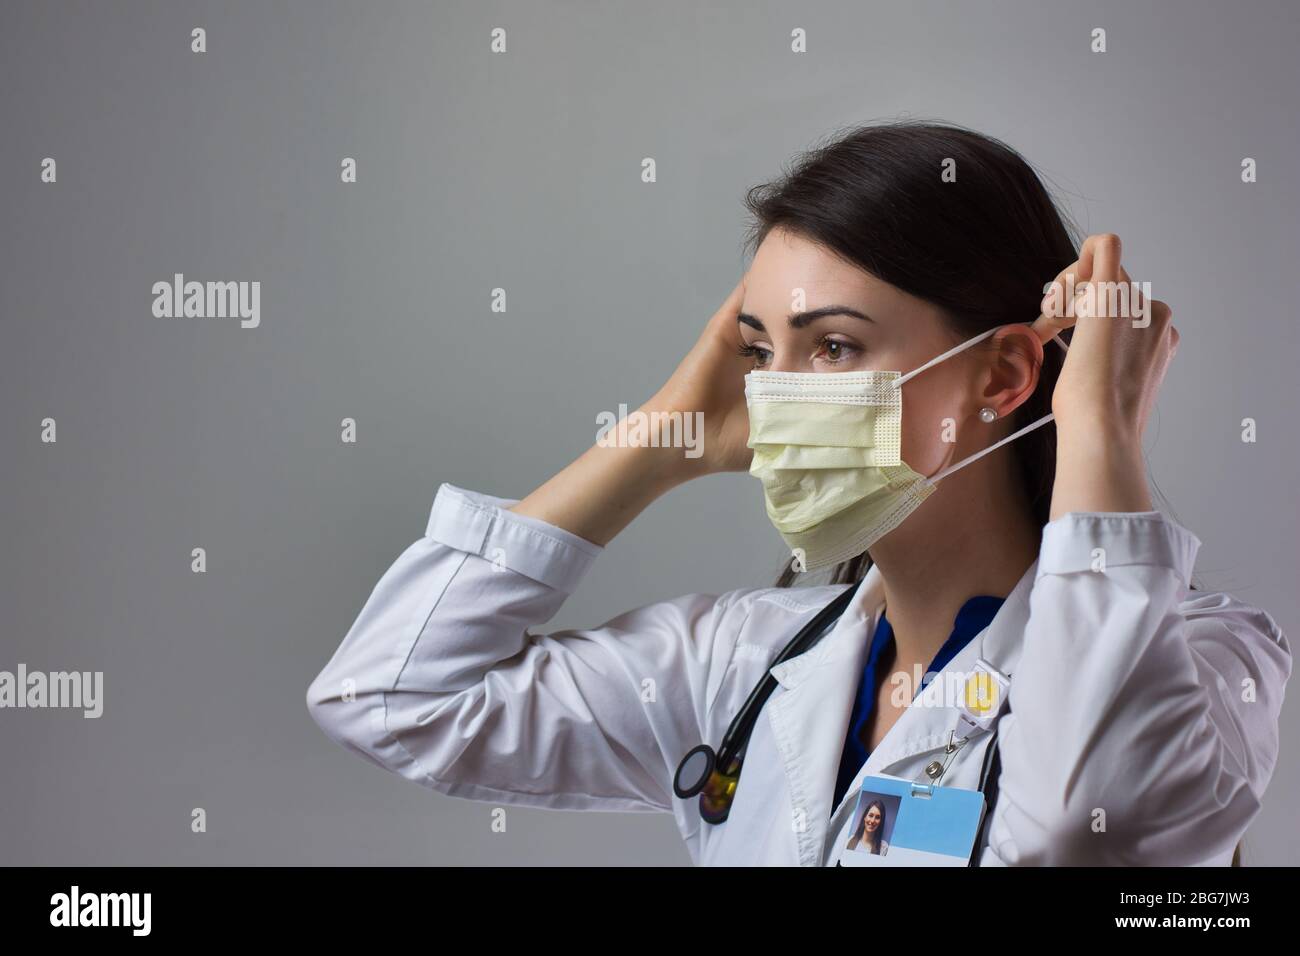 Femme professionnel de la santé démontrant un don approprié de masque pour la protection contre le coronavirus. Une femme proche de la santé met en sécurité Banque D'Images